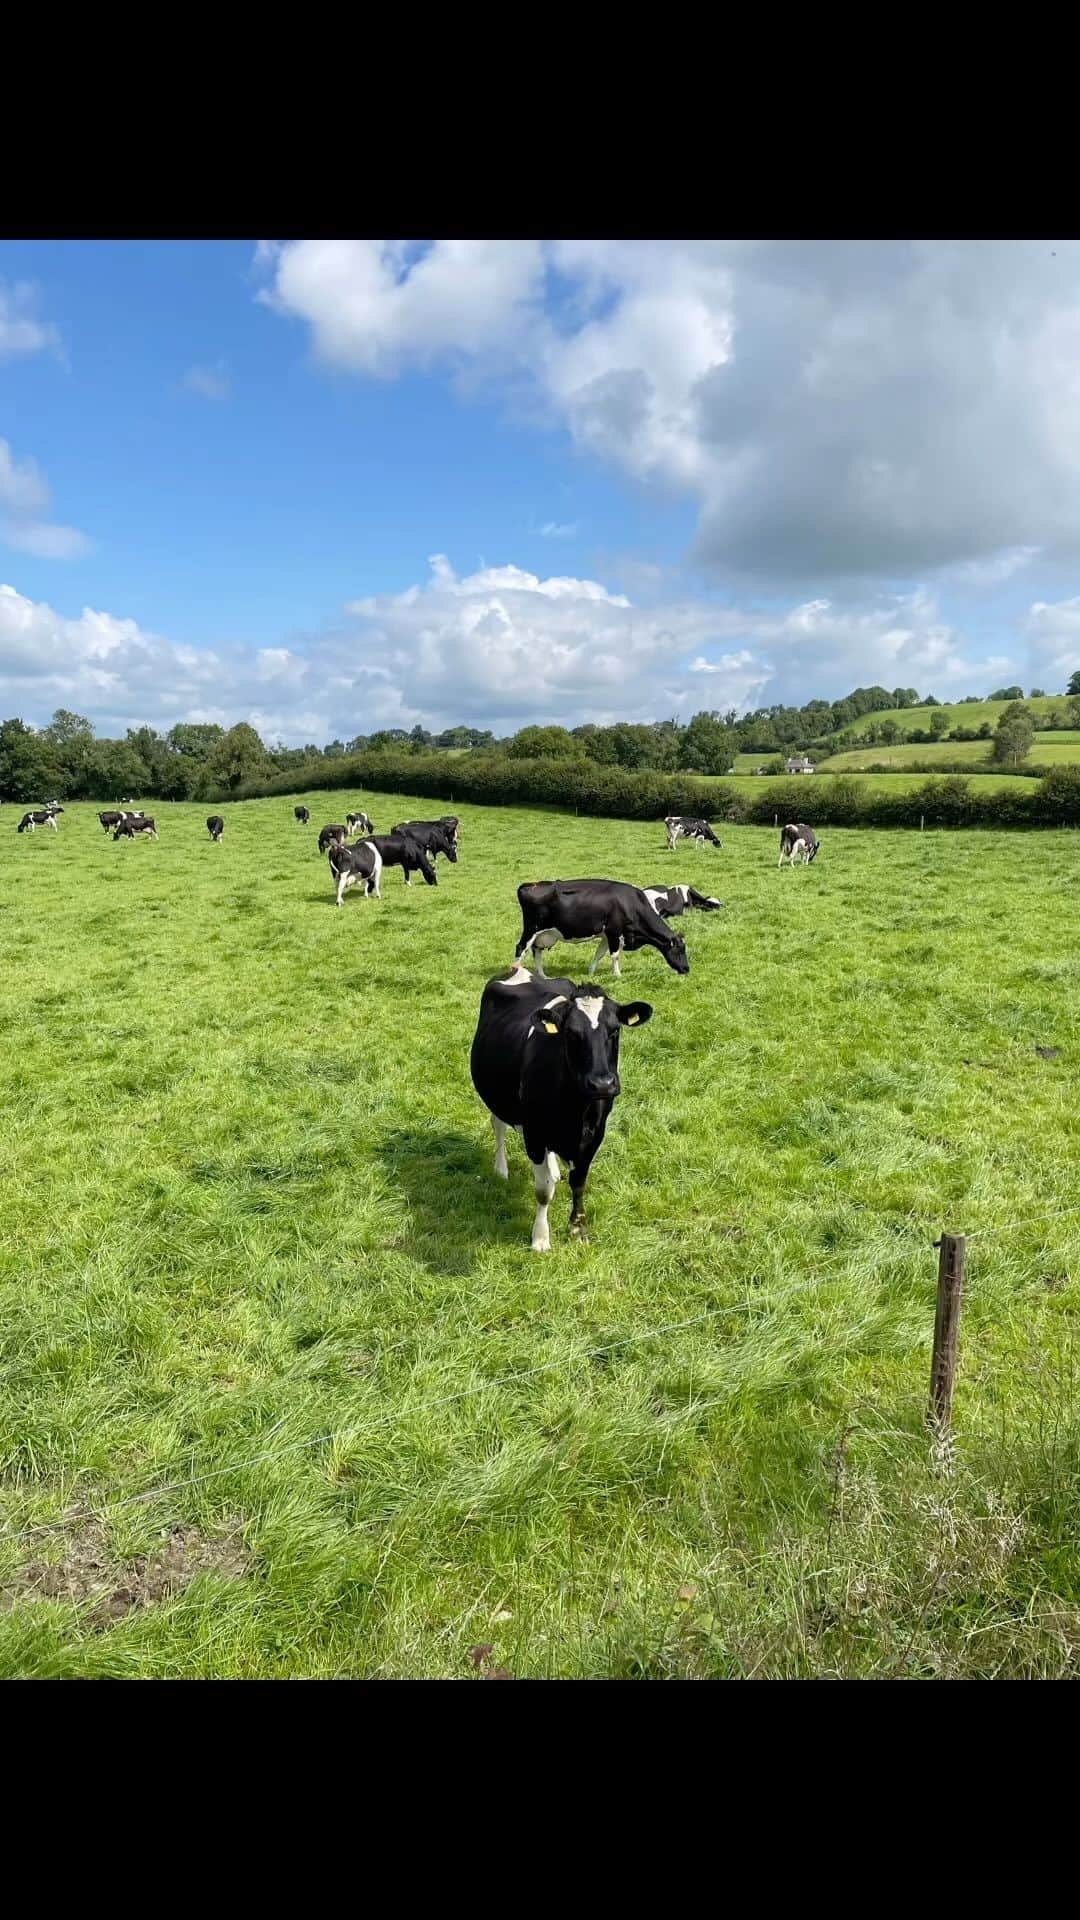 Candlewick Co., Ltd.のインスタグラム：「そして今回のアイルランド視察のハイライトとなったのは、酪農家訪問でした。 アイルランドには17,000以上の酪農家があり、私たちが訪れたキリンカーは、アイルランドから1時間半の郊外にある2番目に乳製品生産量が多い地域。自然が好きな私はこの日を楽しみにしてました！国土の85%が緑地というのが納得ののどかで美しい緑の丘の風景が広がっています。   アイルランドの農家はそのほとんどが家族経営、放牧飼育。訪れたアランさんの農家も4世代受け継がれる放牧飼育の農家。 とにかく衛生的で綺麗に管理されている様子に驚きました。 また、一年に一度一匹しか出産をさせず、搾乳は午前と午後に１回ずつだけ。 炭素をより吸収するシロツメグサを植え、有機肥料（牛糞）が陽に当たり炭素発生するのを防ぐため土の表面に撒くのではなく、地中に埋め込むように散布する特殊な機械を活用しています。 サステナビリティ、動物福祉、ストレスのない効率的な酪農を目指し、日々研究と投資を重ねながら農場を営んでいる様子に強い関心と感動を覚えました。 実際に放牧飼育の芝生を訪れると、牛は人間を怖がるどころか興味津々に寄ってきて、日頃からアランさん家族が愛情をもって飼育しているからなのだと感じました。   アランさんの言葉で印象に残ったのは、 Farming for us is not just job it’s hobby and lifestyle   その言葉からも酪農をただの仕事ではなく、自然や牛たちと共生しながら丁寧に生きていることが 代々受け継がれる酪農の秘訣なのだと思いました。 私たちが伝えるべきメッセージを、自分の目で実際に体験できた事は今後の活動に向けた大きな財産となりました。   アイリッシュグラスフェッドバターやチーズは日本でも成城石井などで見かける事ができます。ぜひ見かけた際はお手に取ってみてください。 https://irishfood.jp/dairy/  #キャンドルウィック #広報 #マーケティング #サステナブルPR #コミュニケーションデザイン #サステナビリティ #アイルランド #酪農 #牧場 #田舎 #自然 #風景 #ヨーロッパ #グラスフェッドバター #グラスフェッドチーズ #candlewickpr #tokyopr #communicationdesign #sustainablePR #branding #marketing #farming #AgricultureTechnology #sustainability #Ireland #farm #Kilinkere」